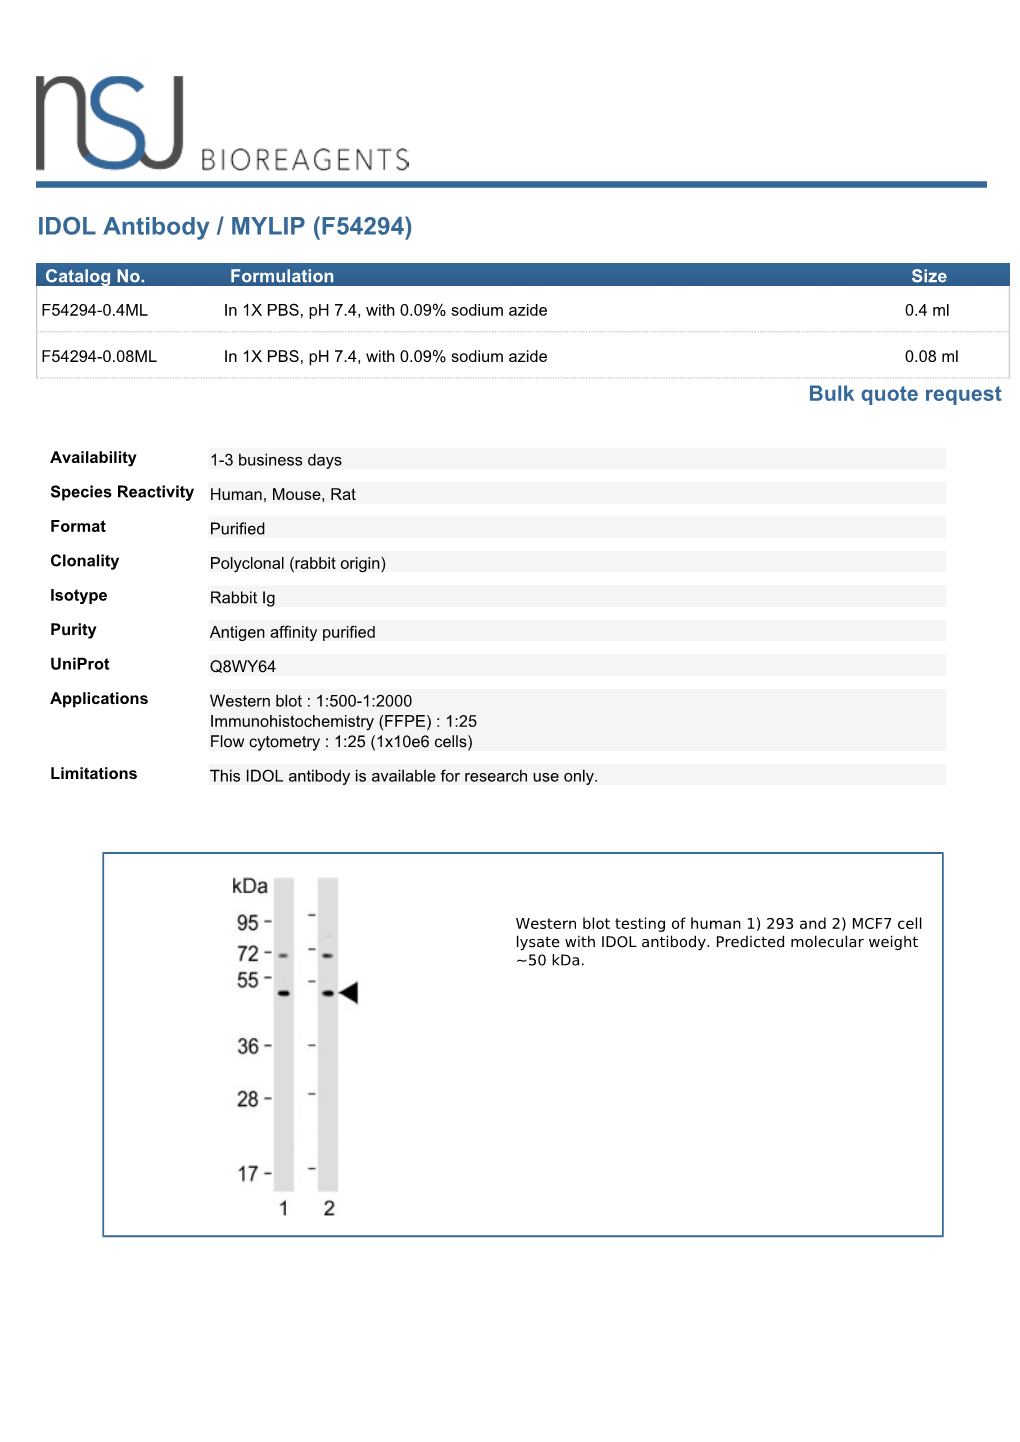 IDOL Antibody / MYLIP (F54294)